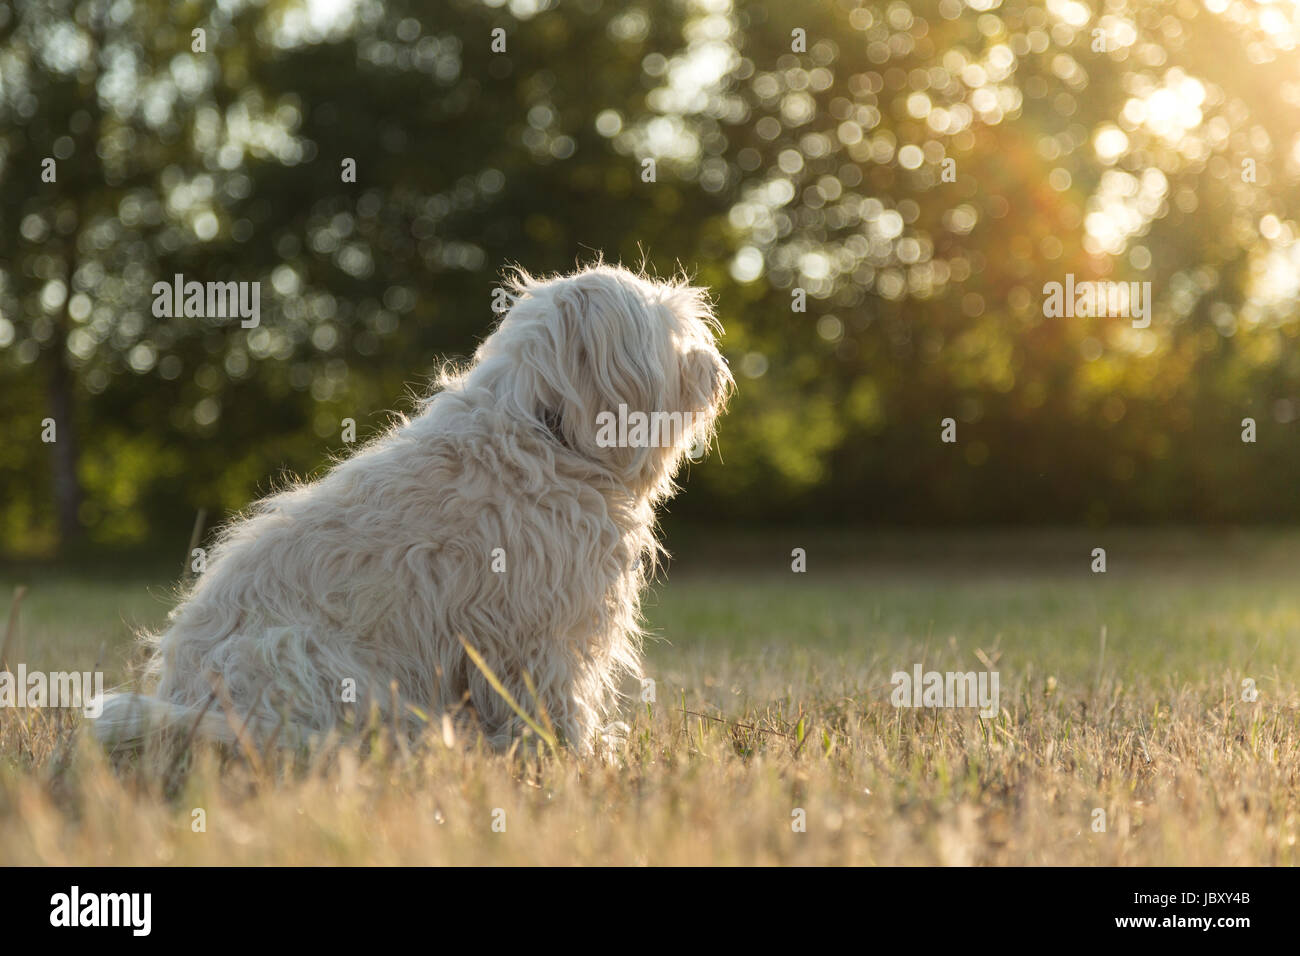 Kleiner weißer Hund sitzt in einer Wiese und schaut zur Sonne. Stock Photo